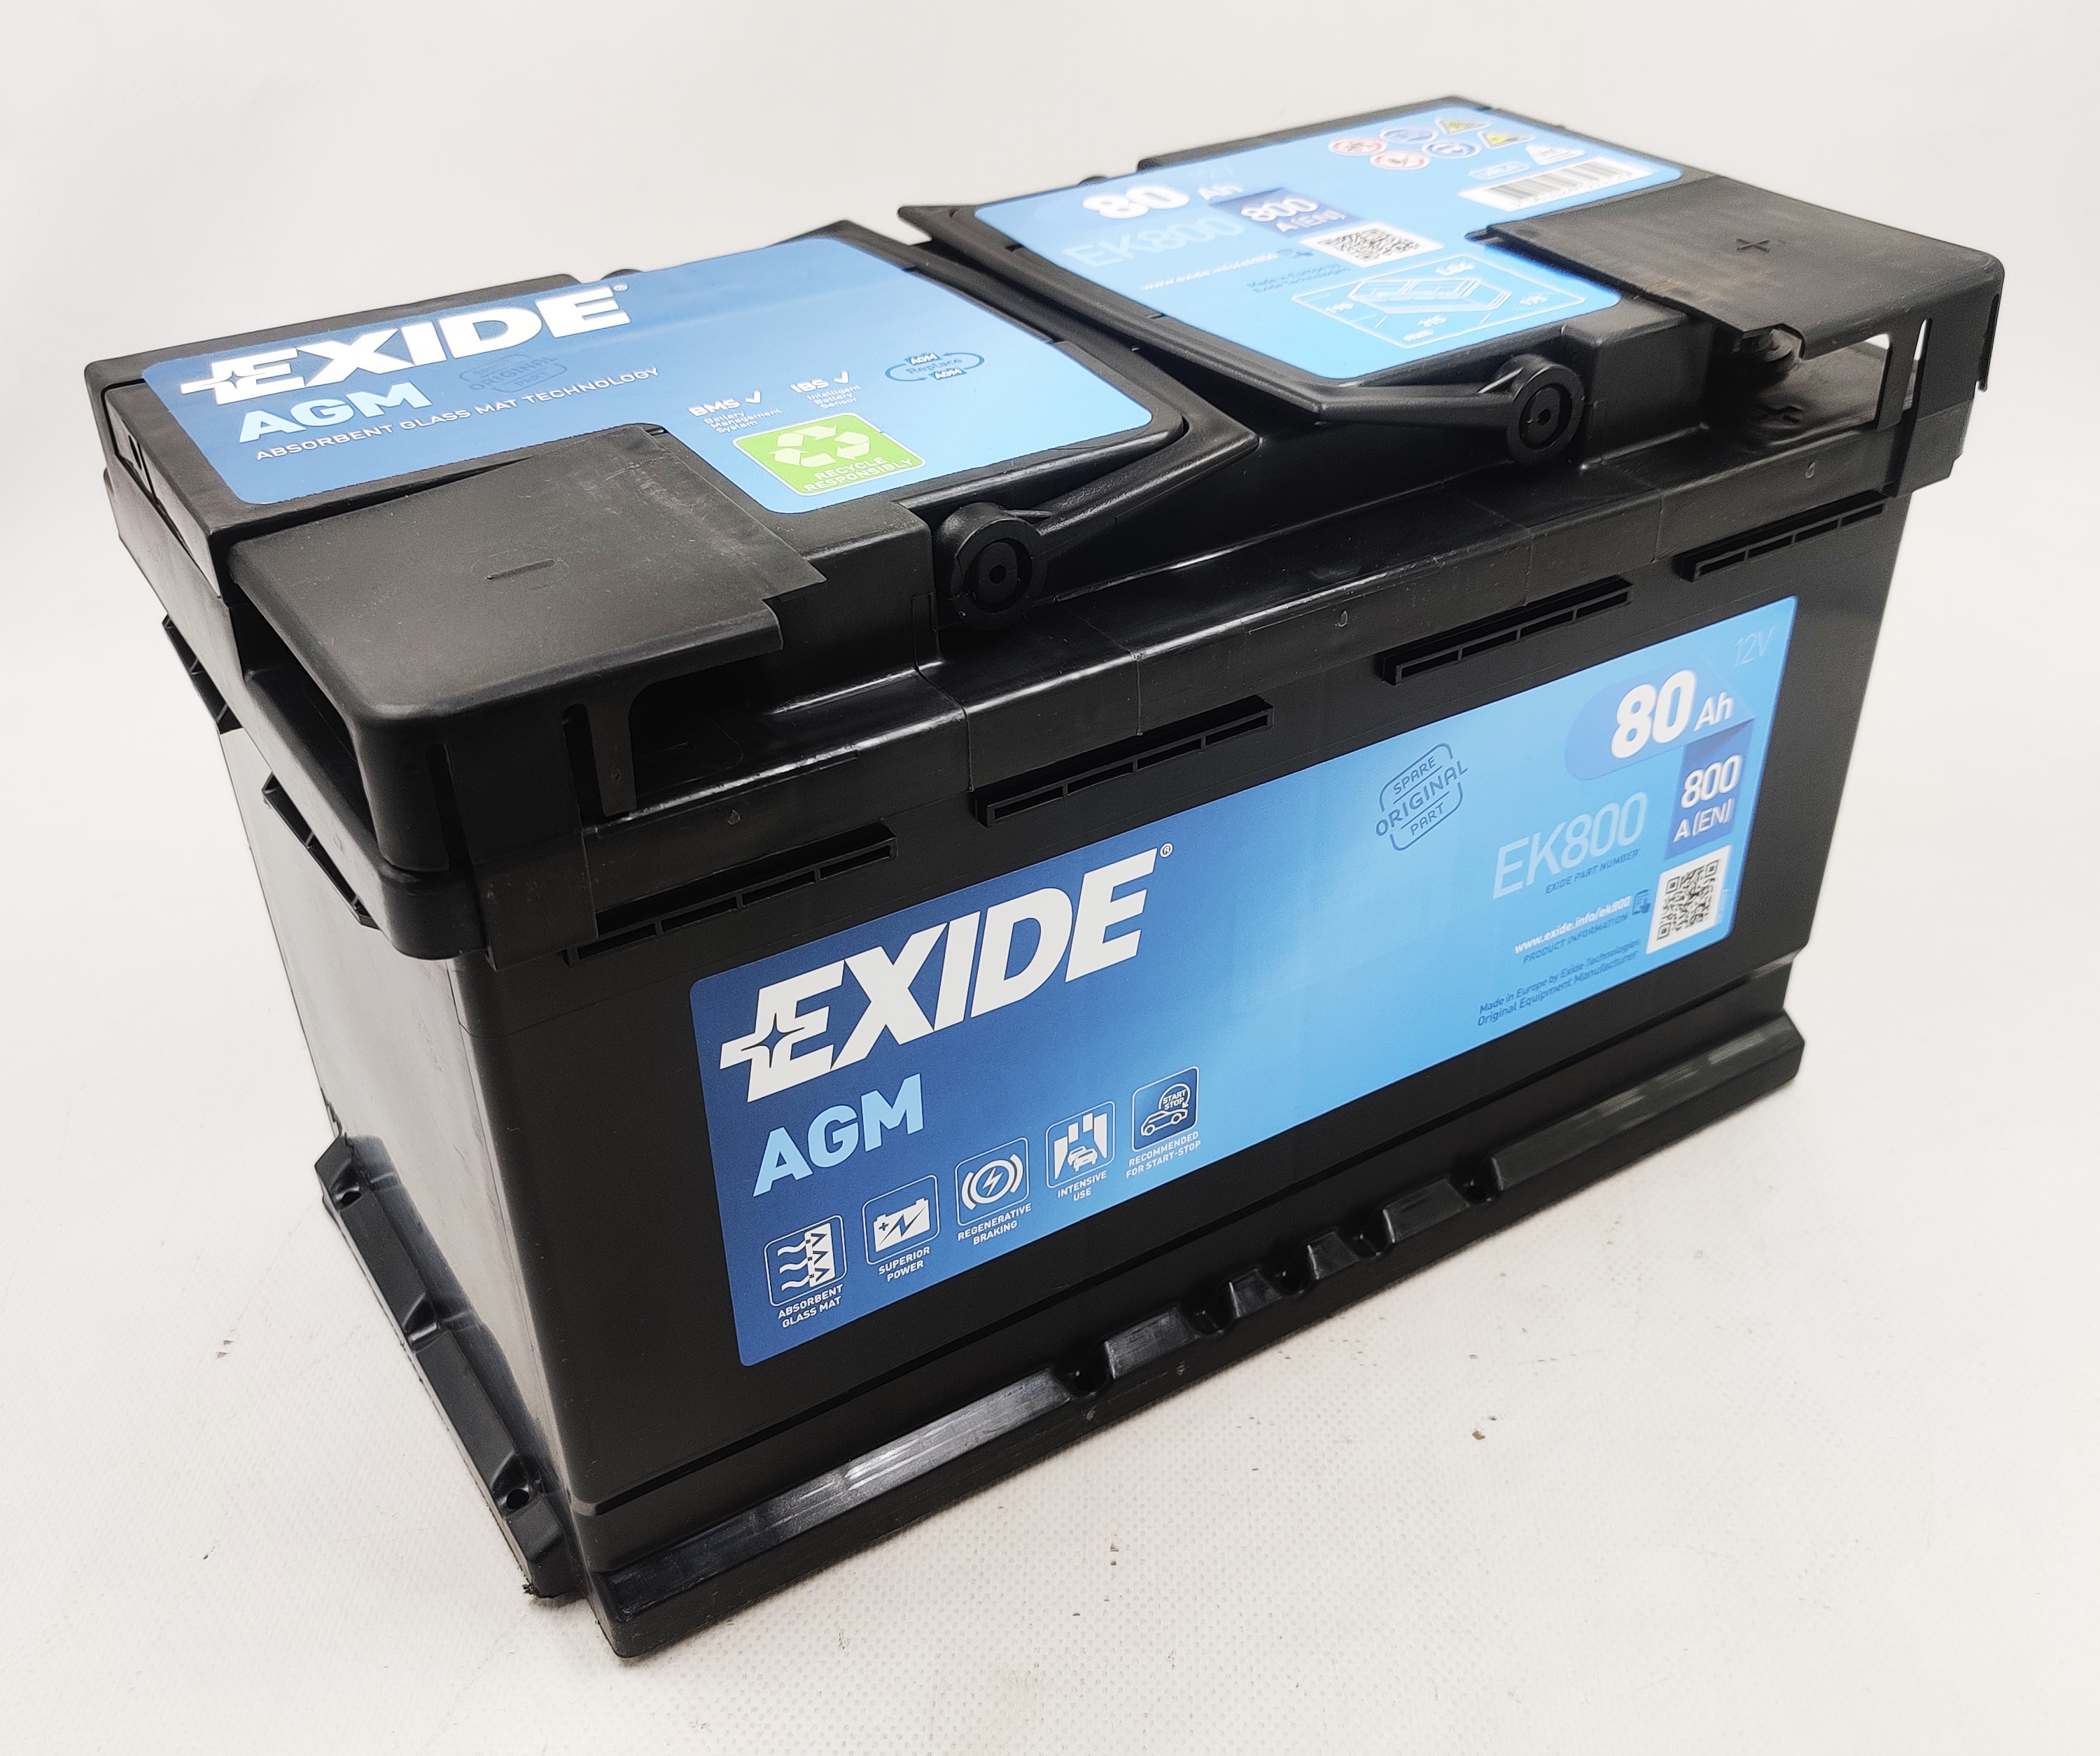 Akumulator EXIDE AGM EK800 12V 80AH 800A